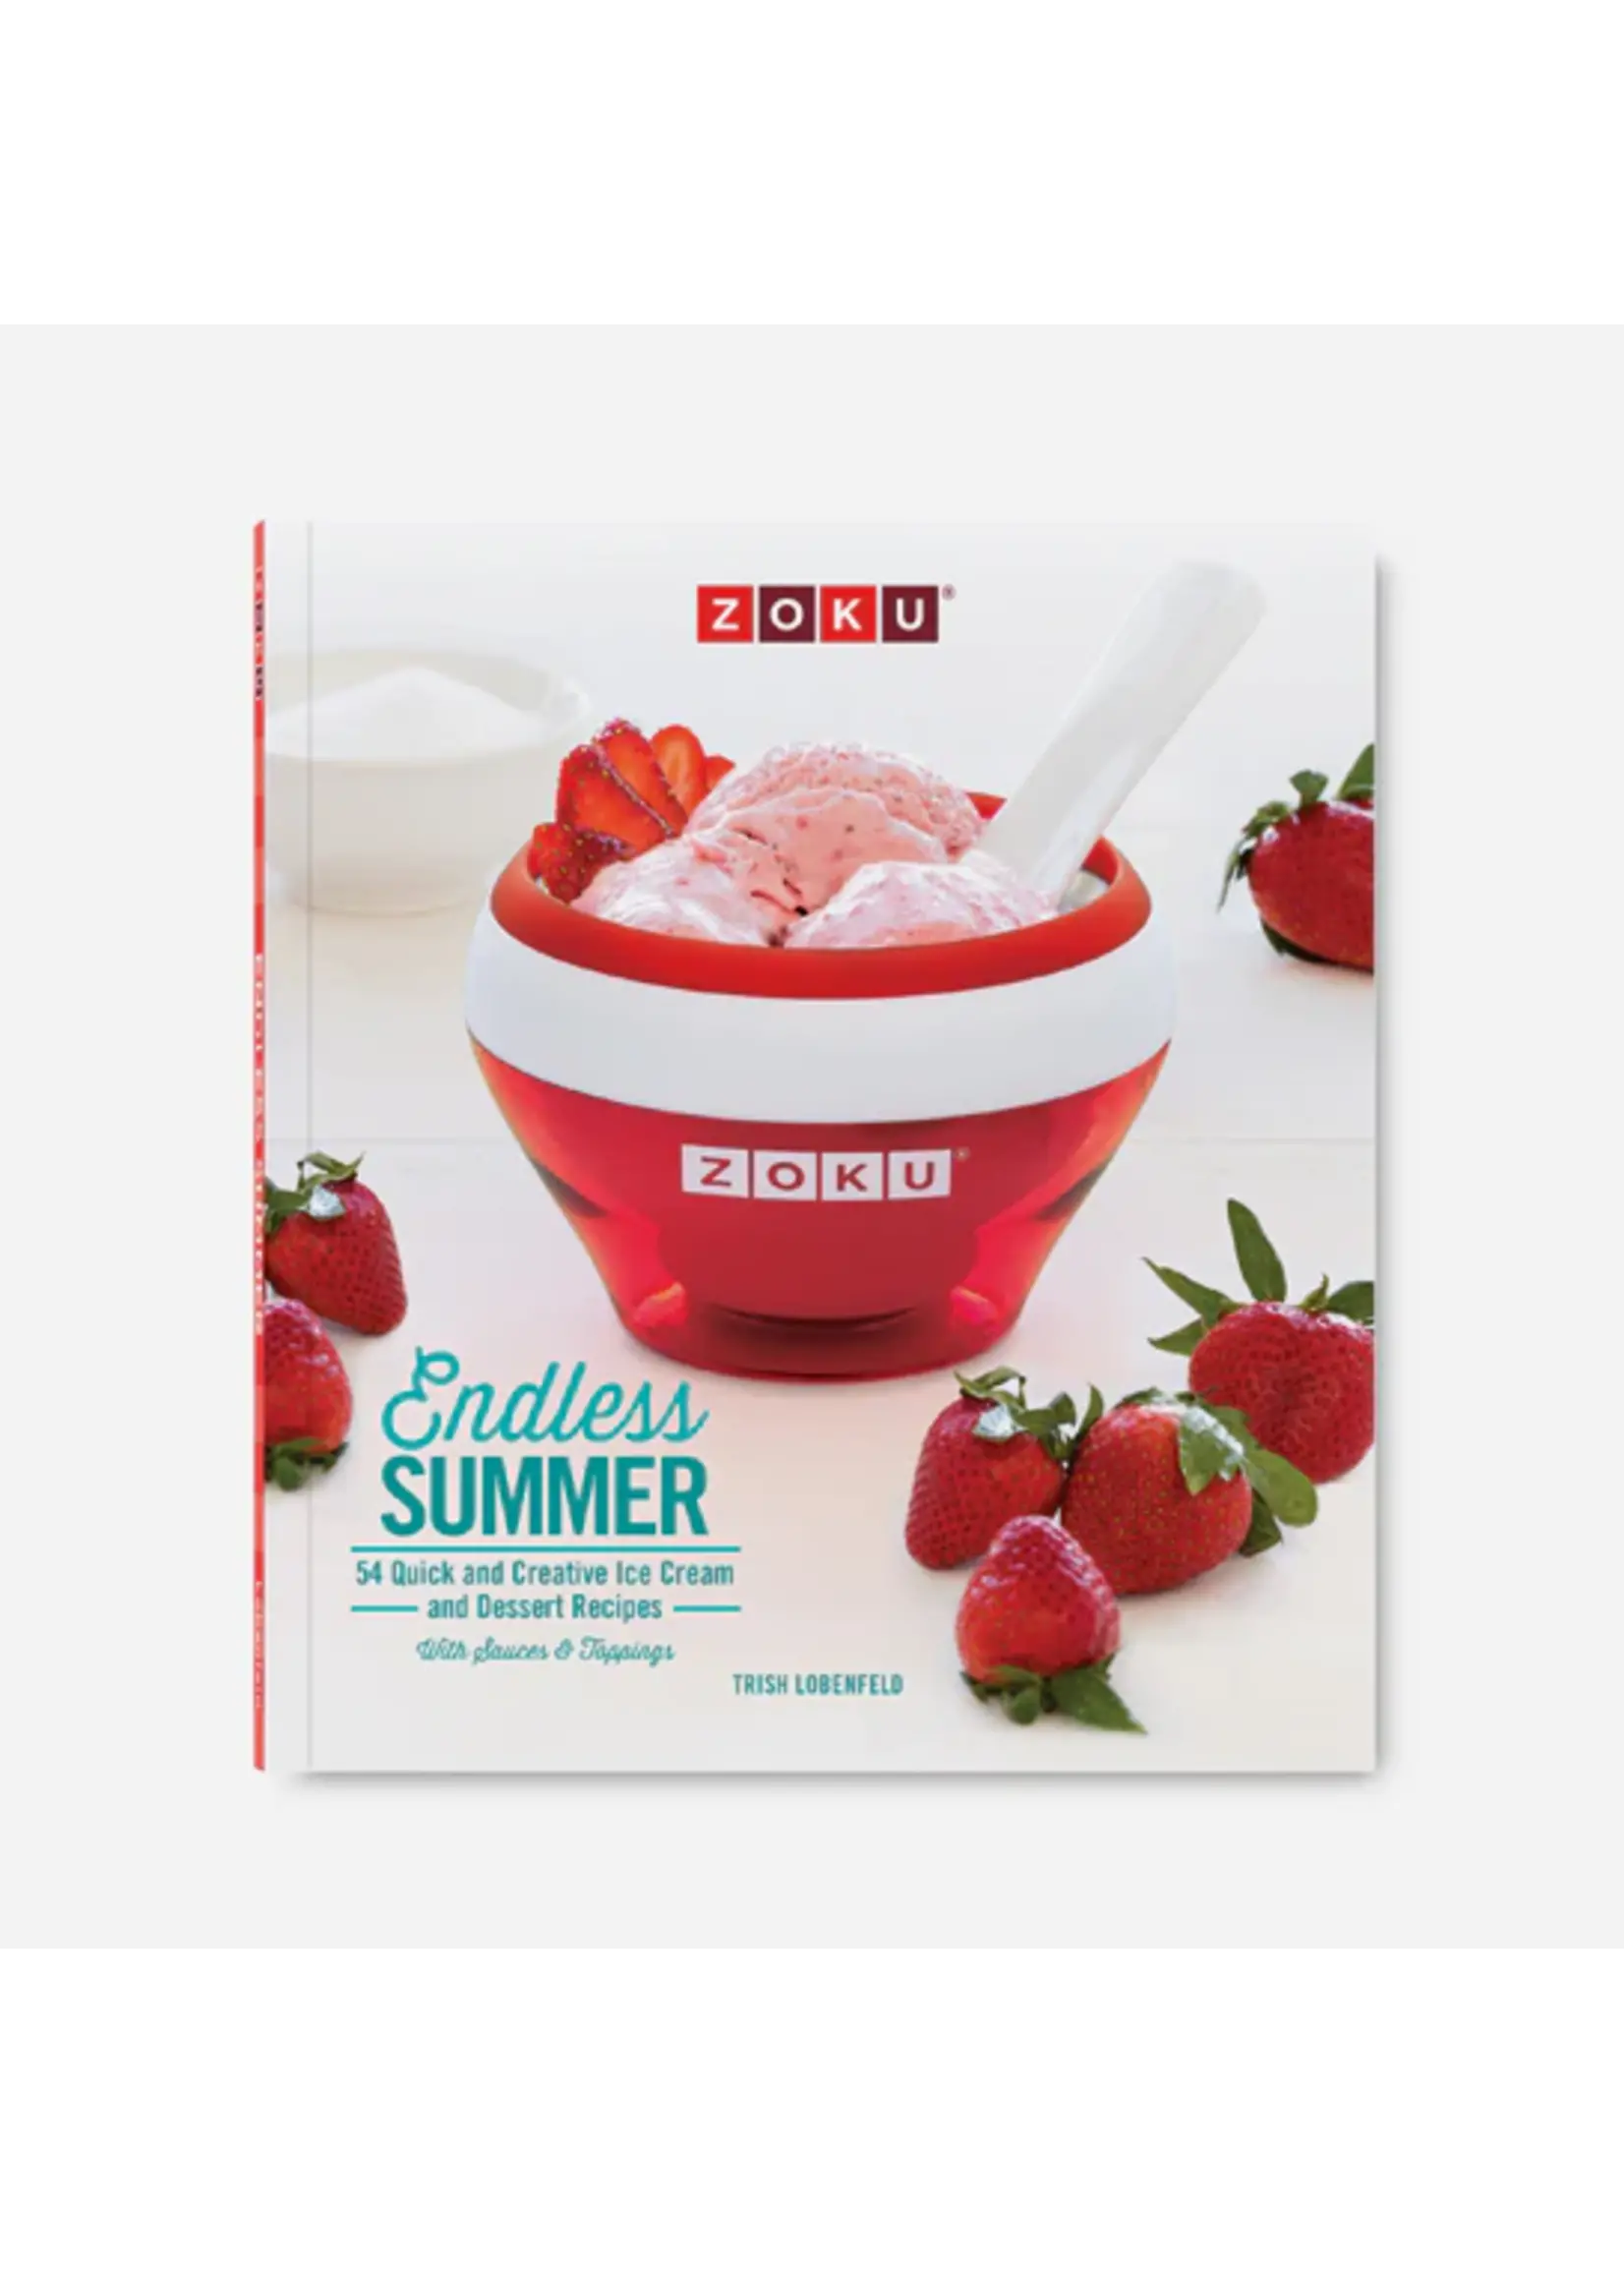 ZOKU- Endless Summer Ice Cream Recipe Book